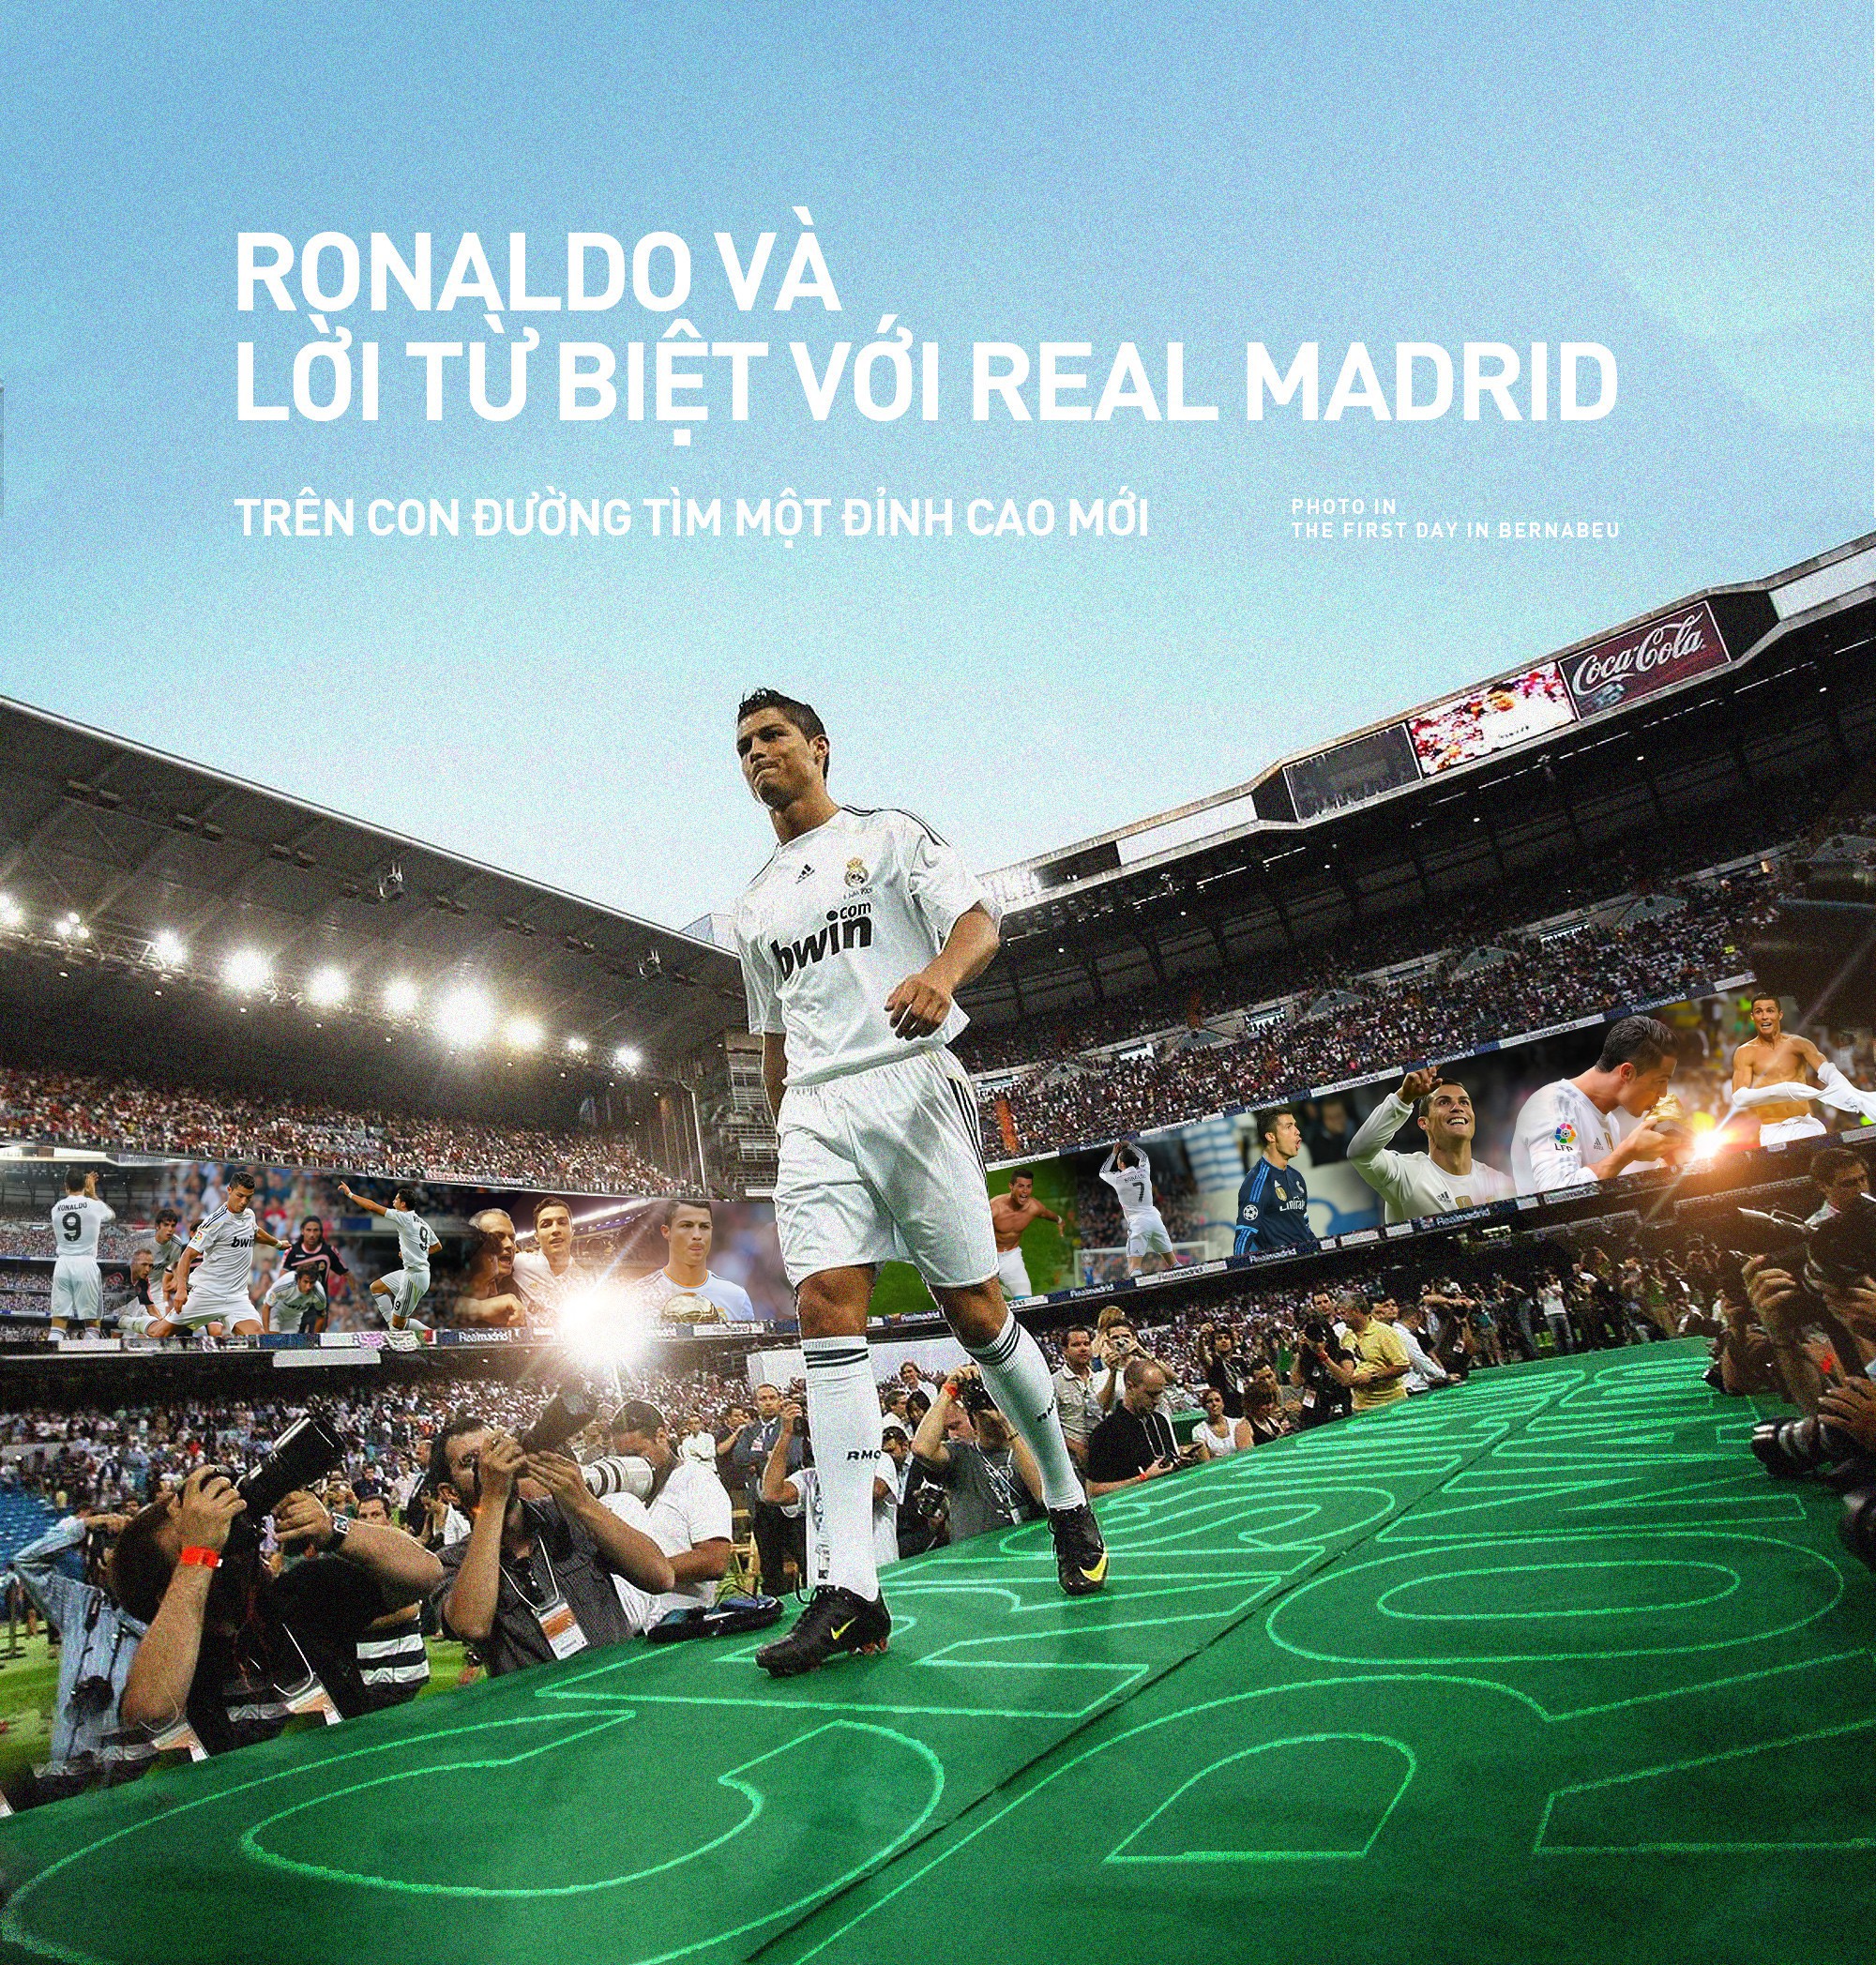 Ronaldo và Real Madrid: Xem hình ảnh huyền thoại Cristiano Ronaldo trong màu áo Real Madrid. Những khoảnh khắc đầy cảm xúc trong sự nghiệp của anh và chiến thắng ngọt ngào của đội.